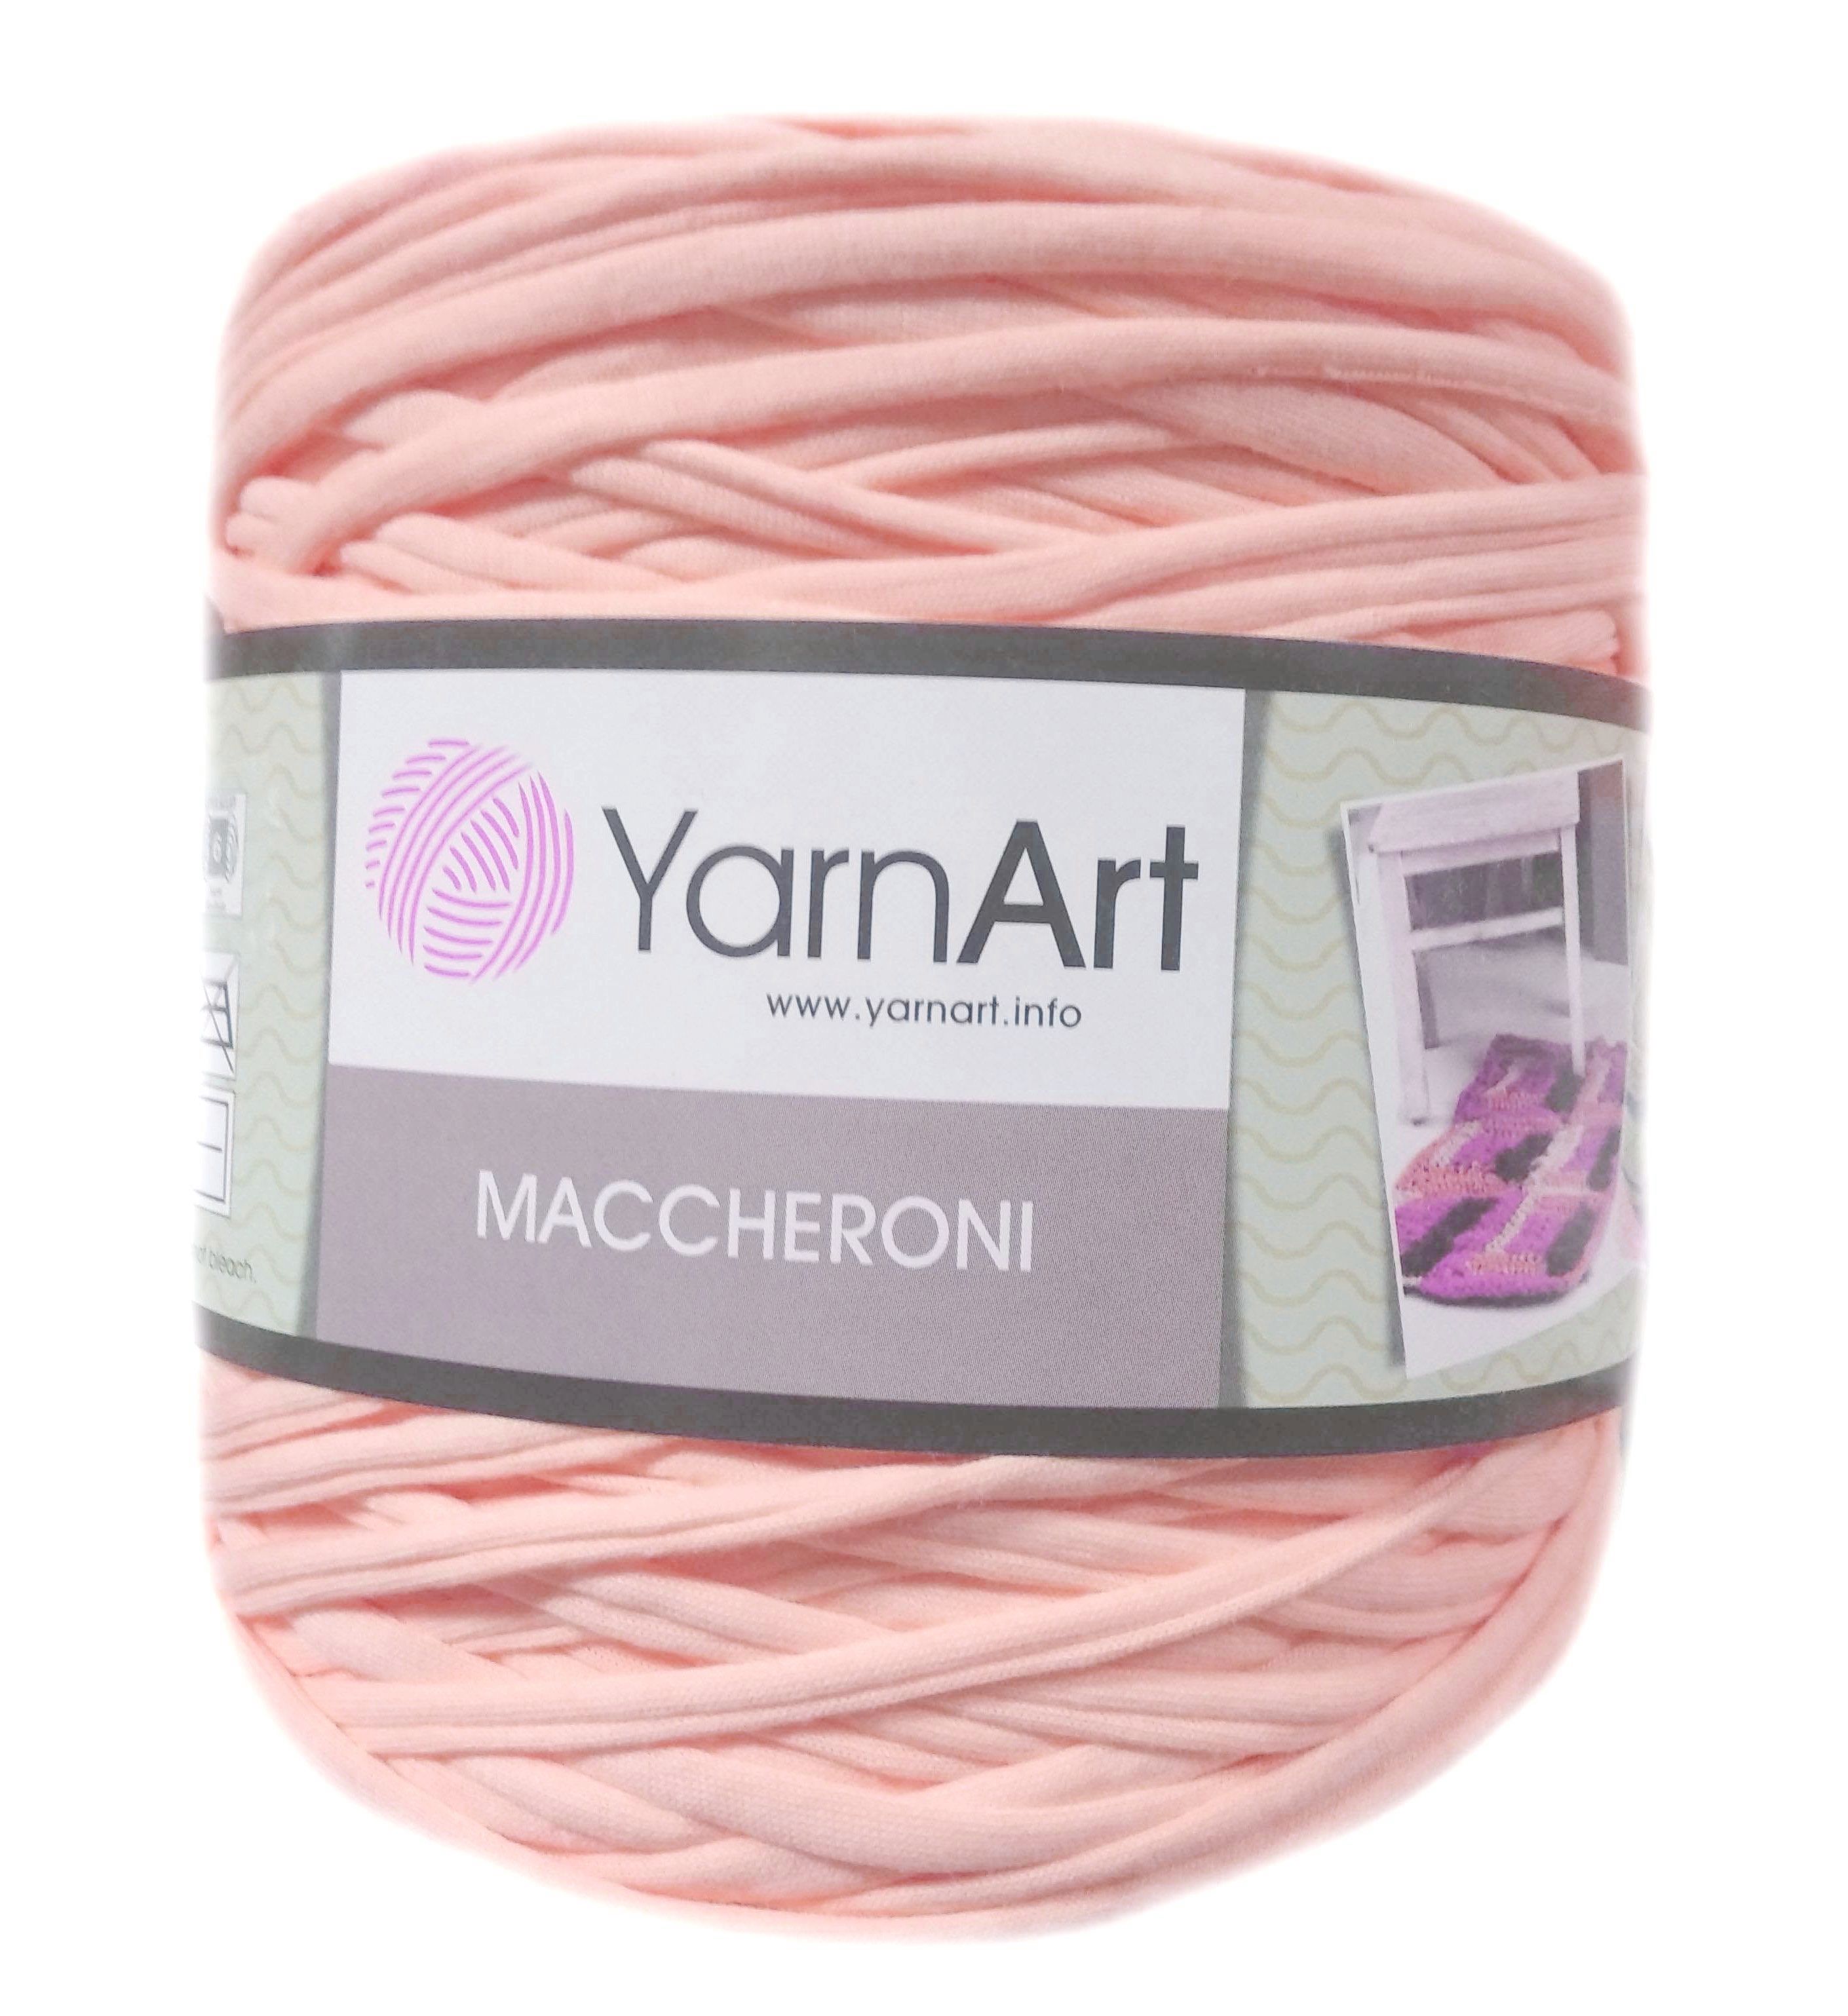 YarnArt MACCHERONI, barackos rózsaszín póló fonal.Tű 12-15 mm.